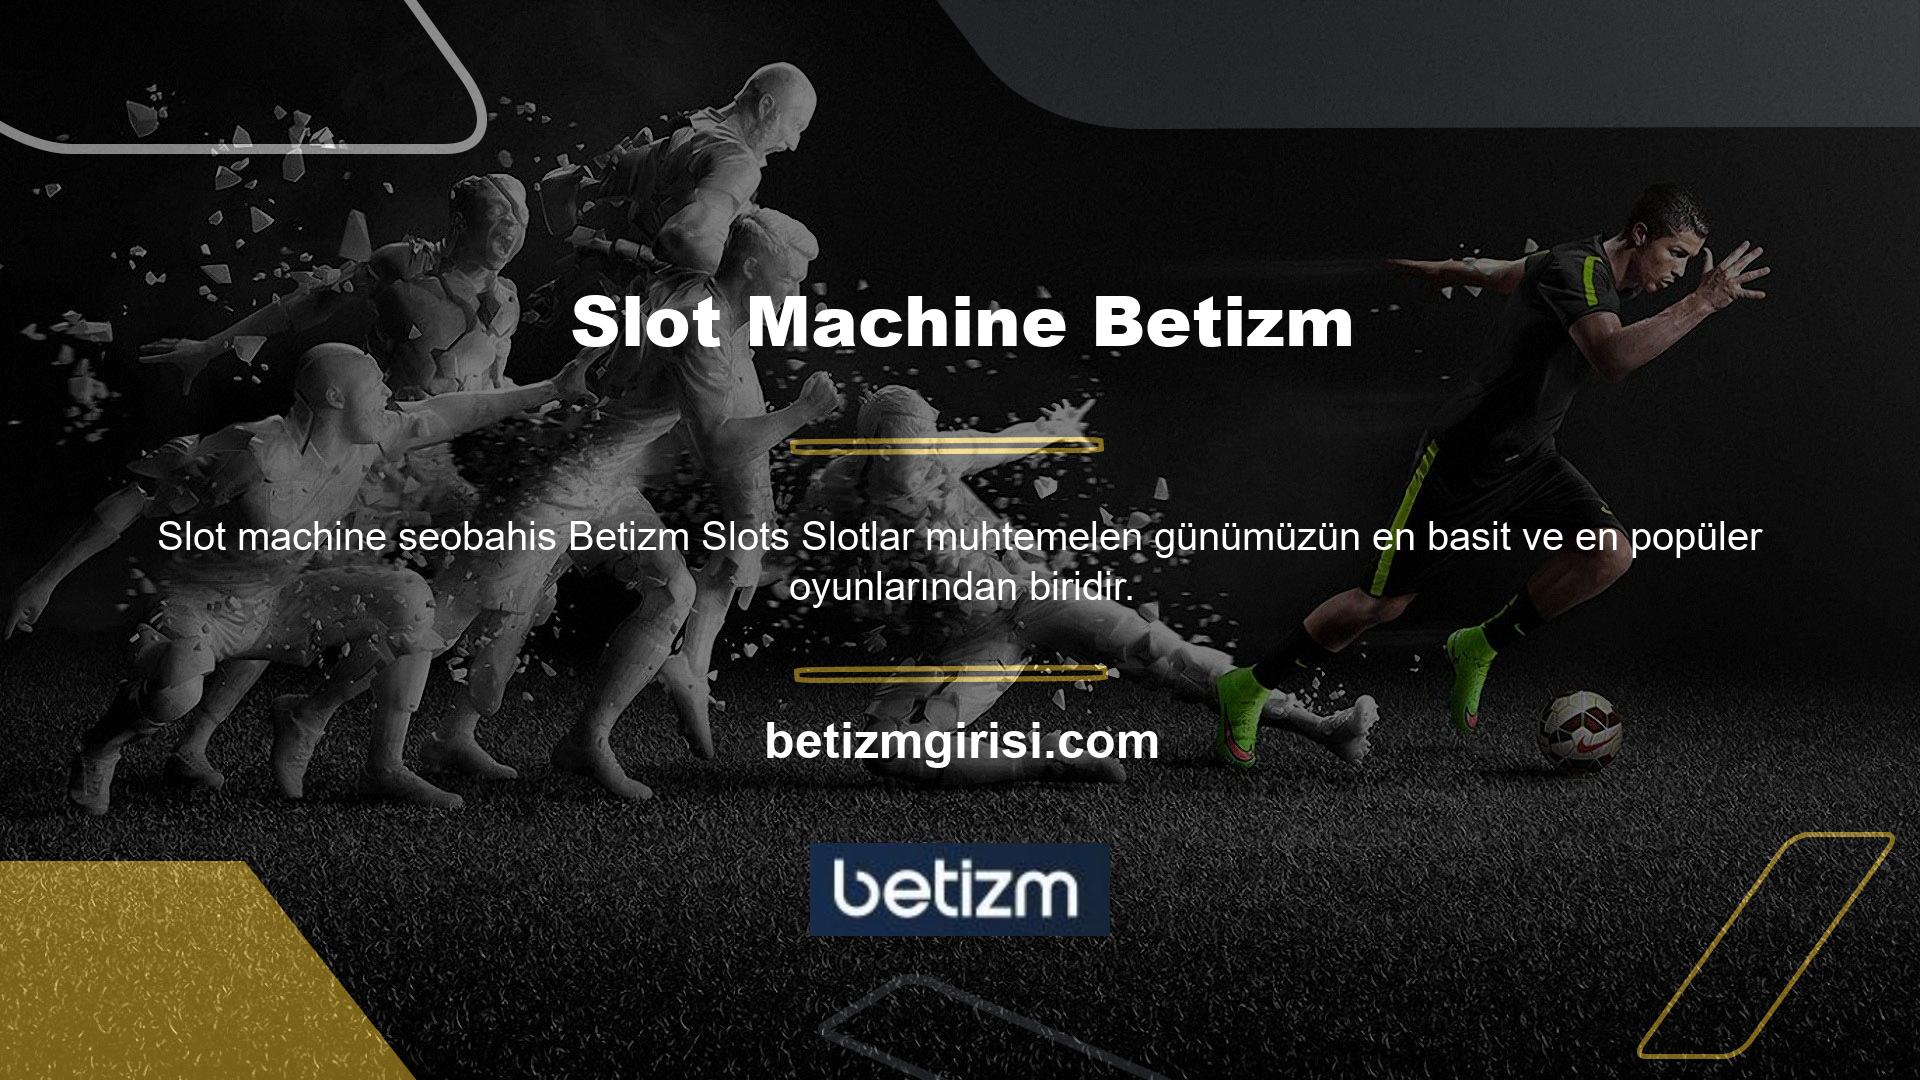 Genel olarak Türkiye'de kaliteli hizmet veren bir slot sitesi olan Betizm, çok sayıda tercih edilen slot sunmaktadır